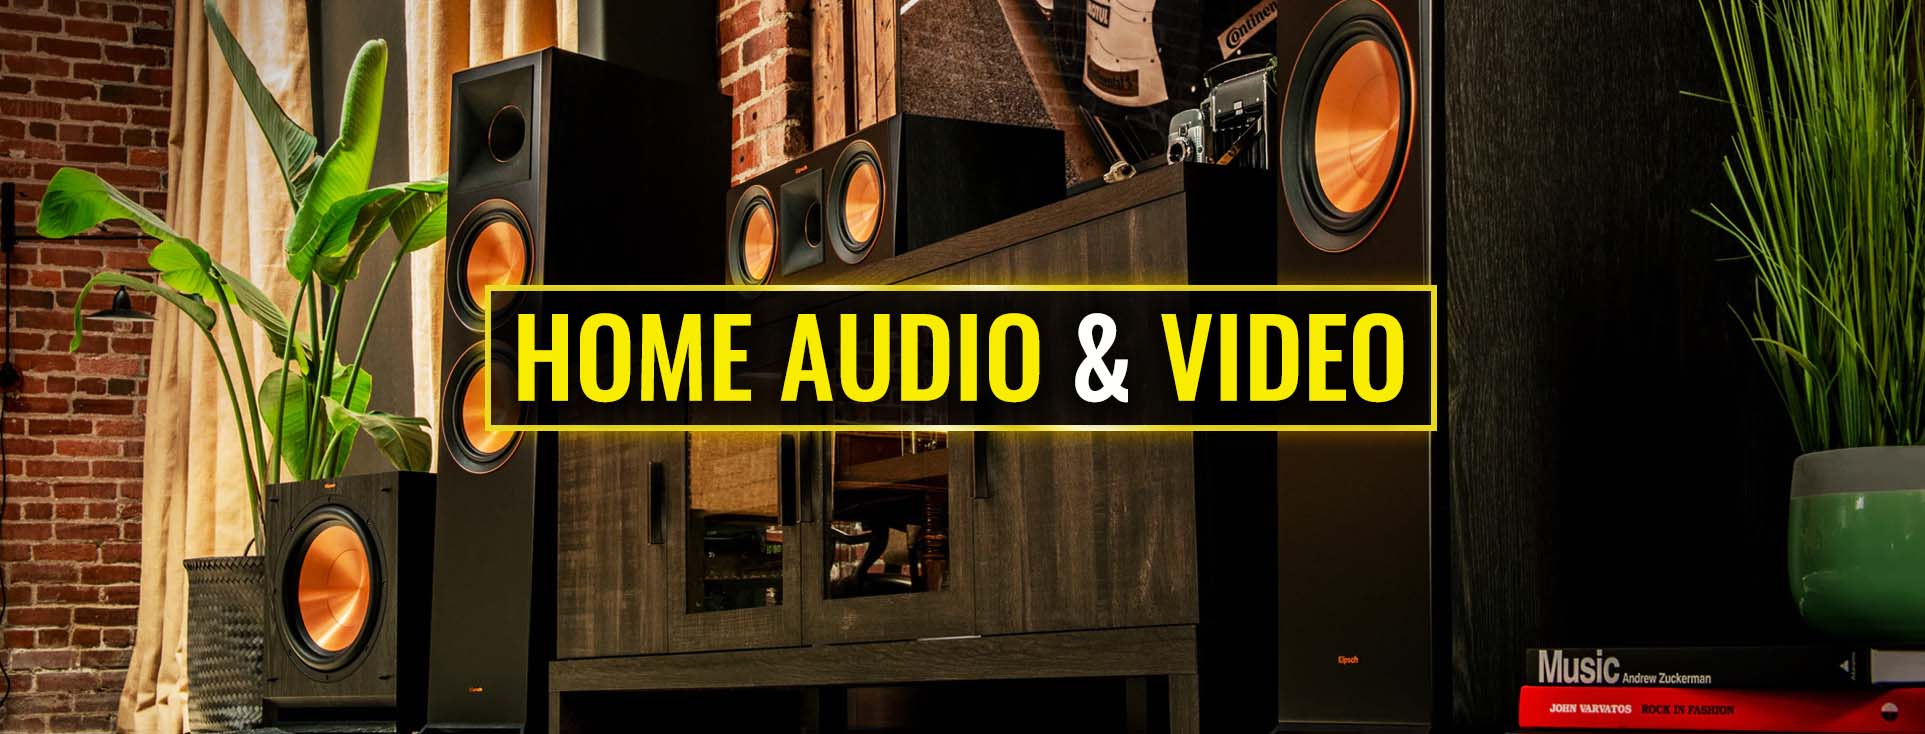 Home Audio & Video